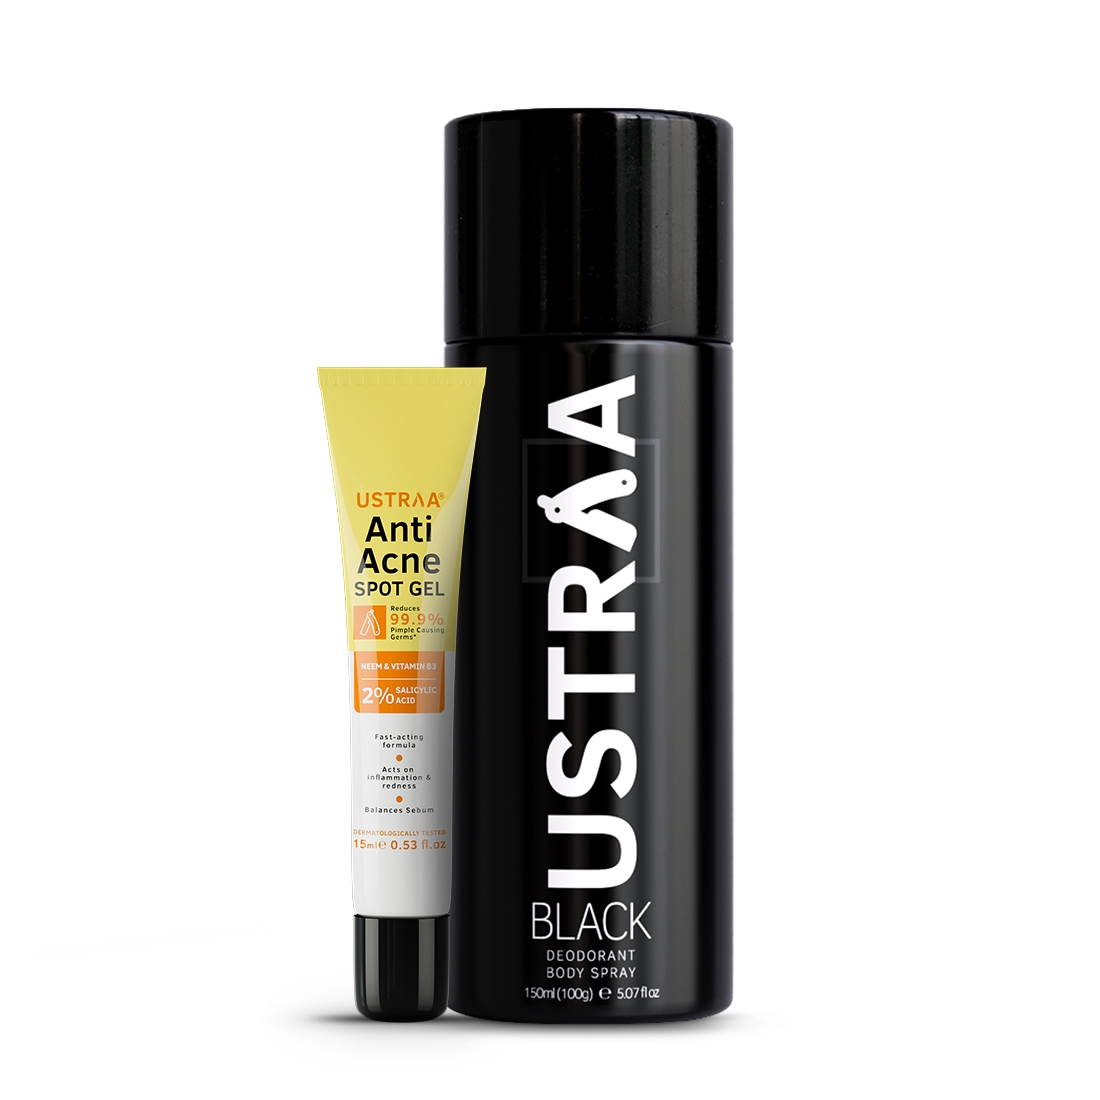 Ustraa | Ustraa Anti Acne Spot Gel - 15ml & BLACK Deodorant Body Spray - 150ml 0